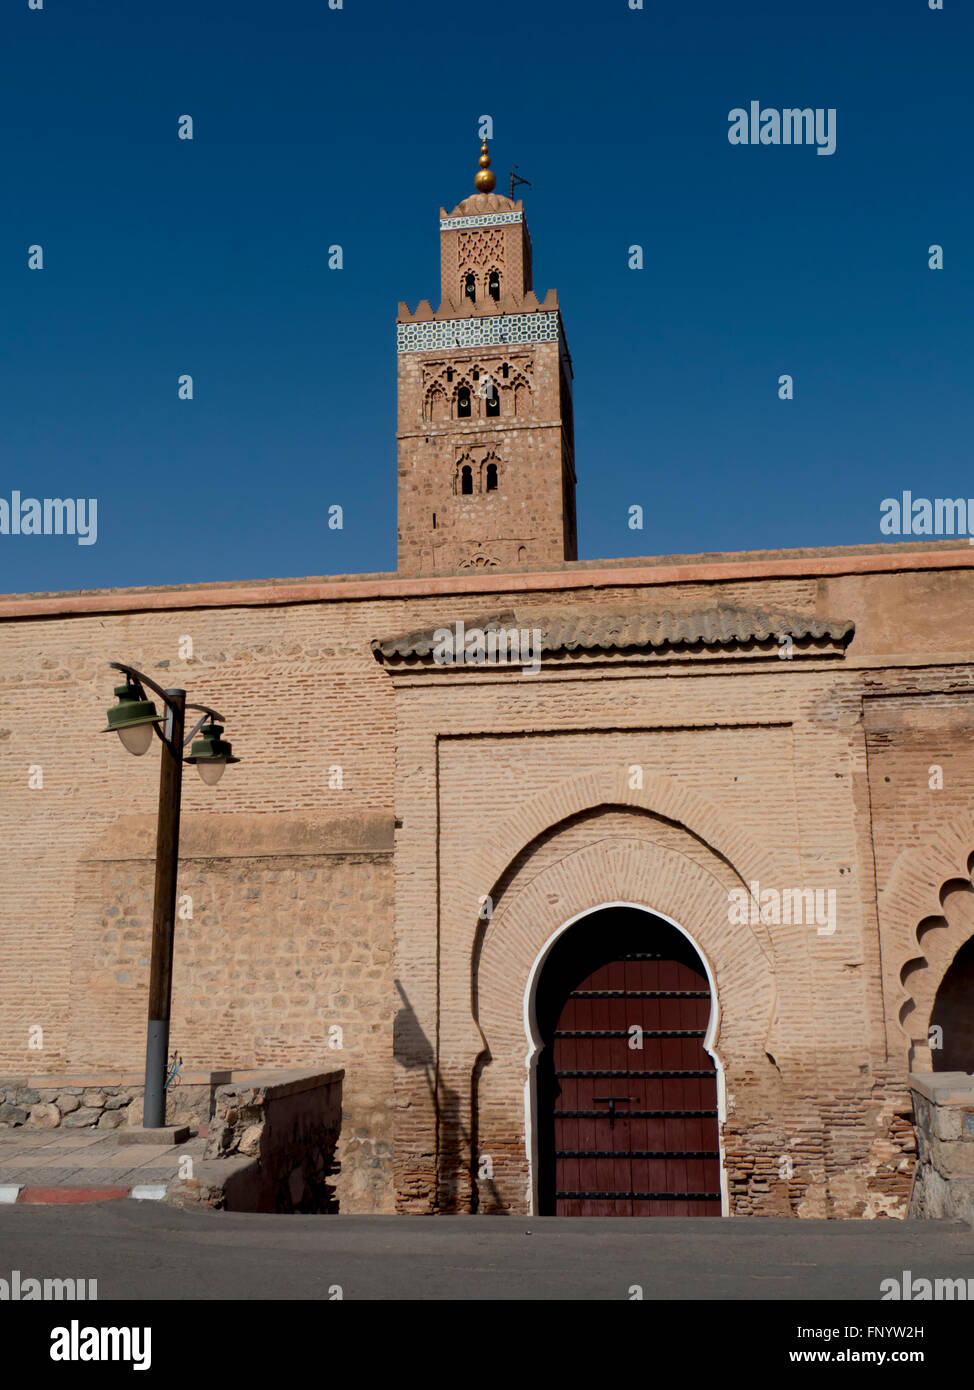 Morocco, Marrakech, Koutoubia Mosque Stock Photo